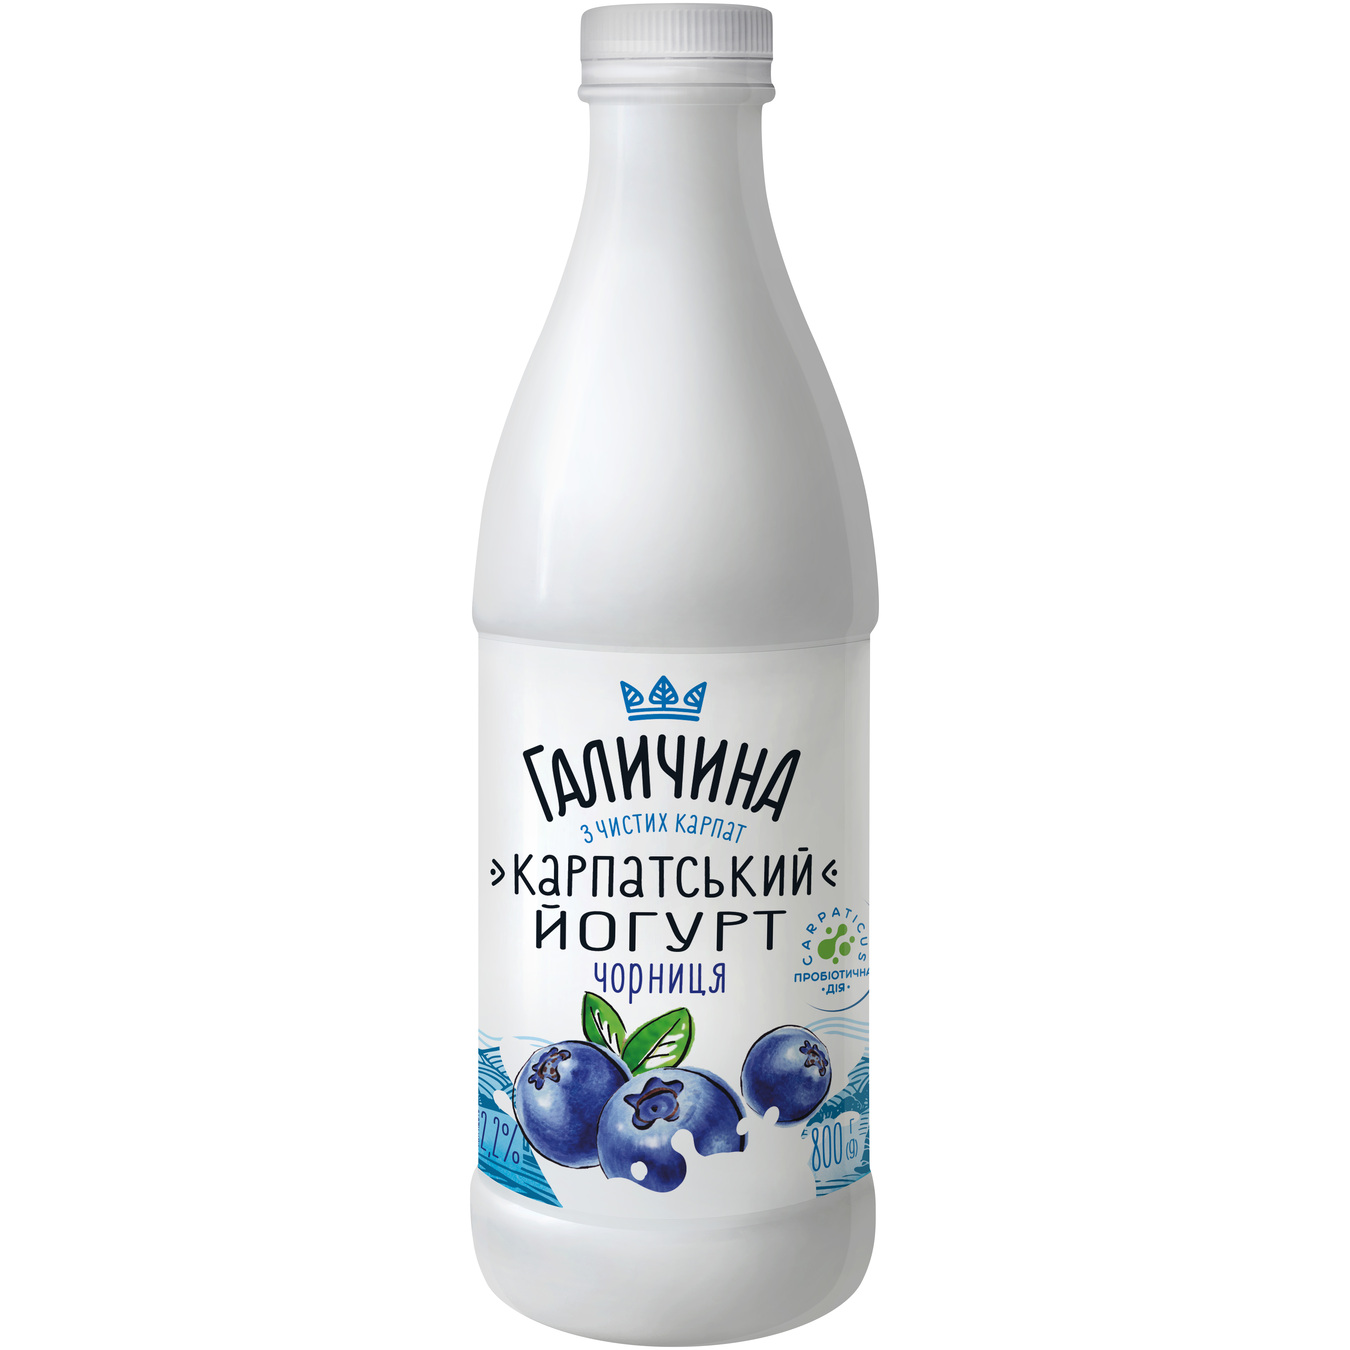 Halychyna Karpatsʹkyy Blueberries Yogurt 2,2% 800g